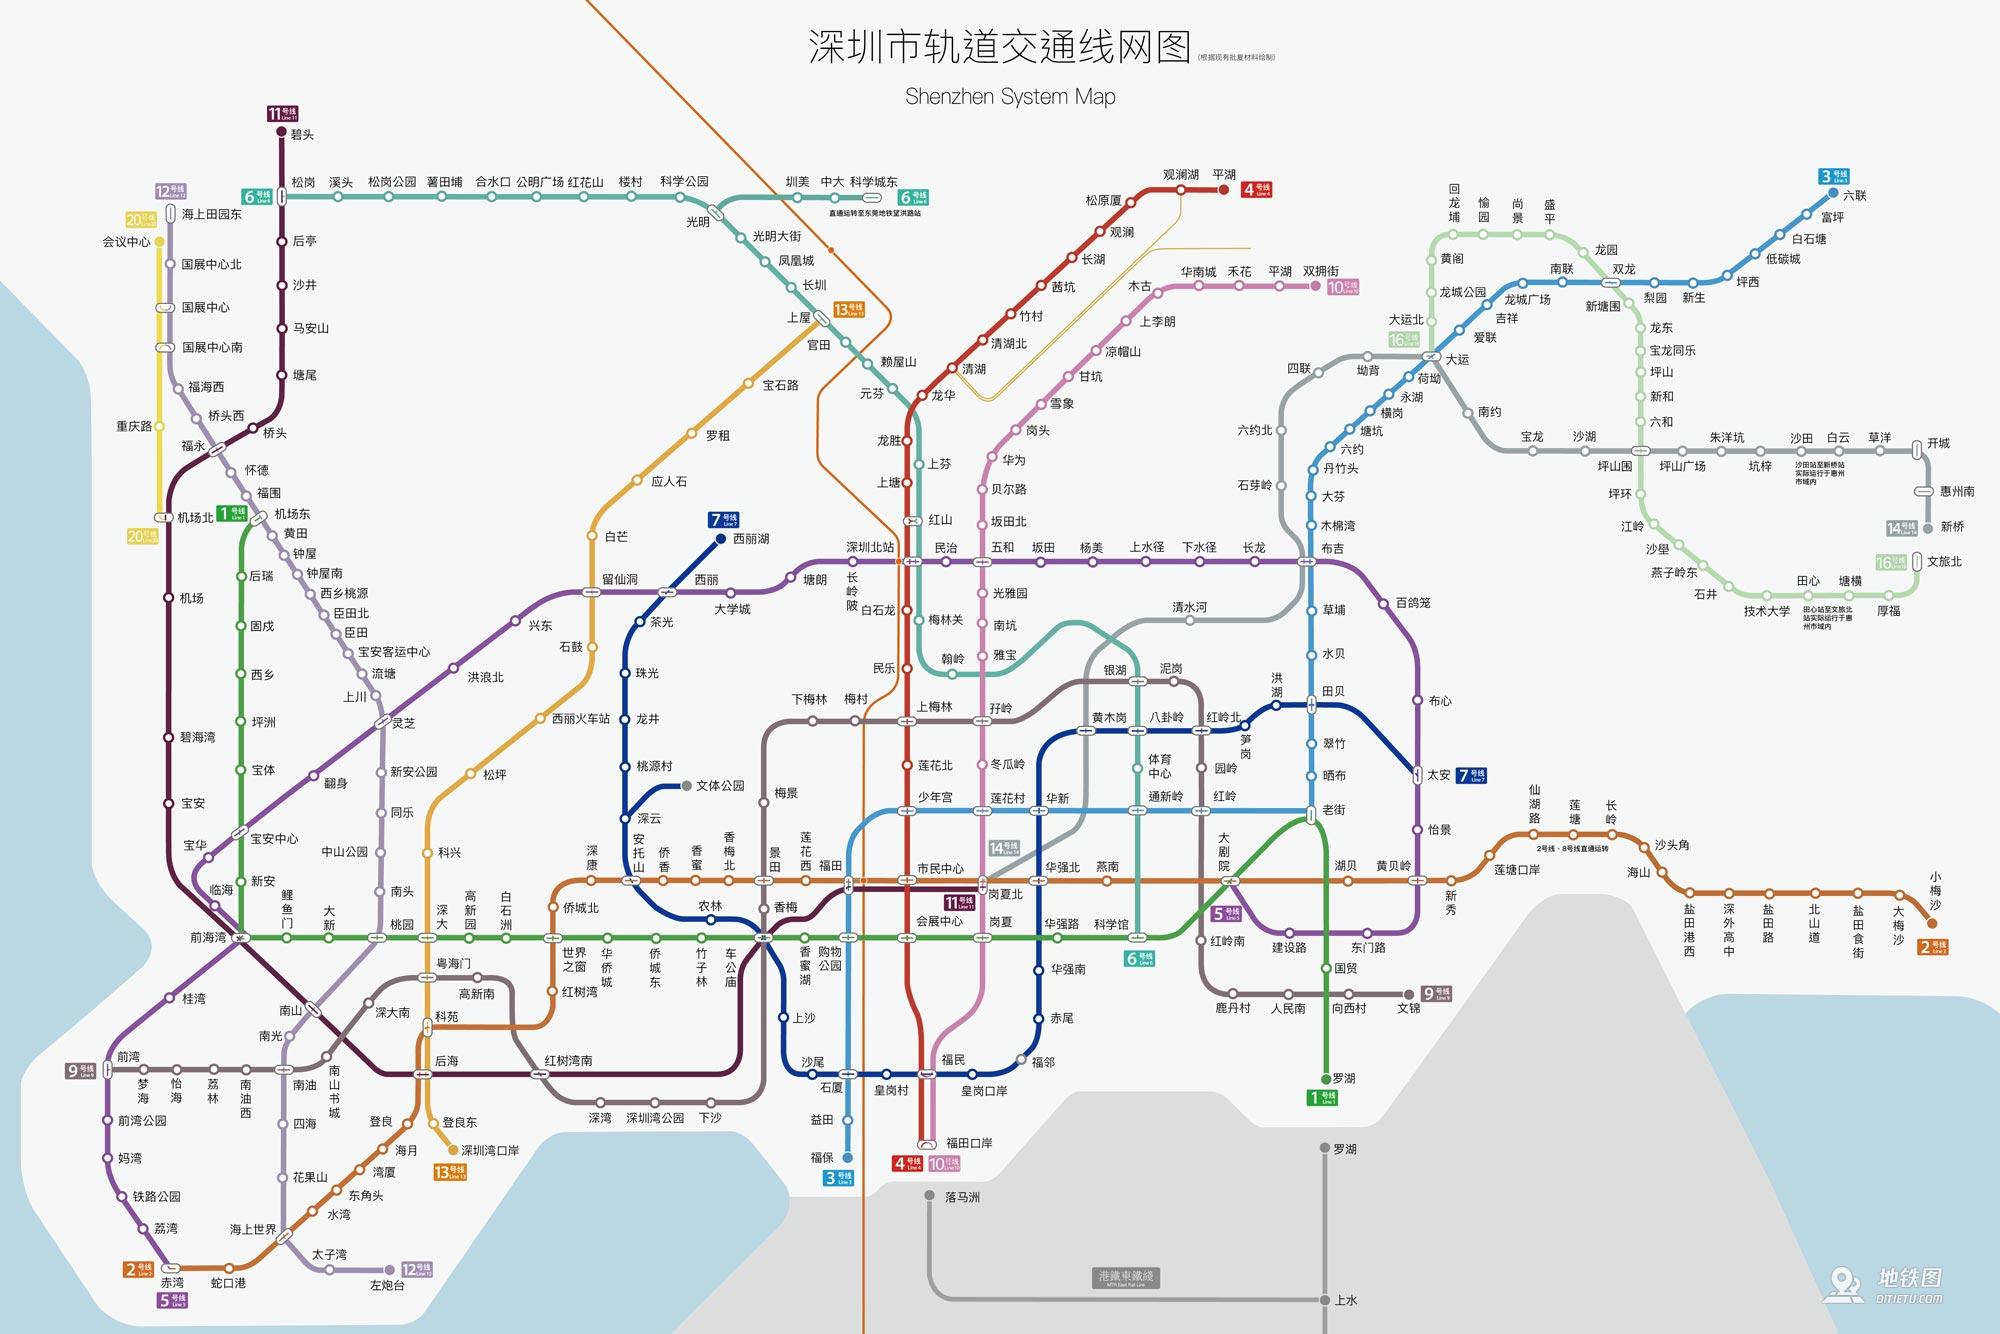 2019版■深圳地铁线路图 2018版深圳地铁2020年线路规划图(注:点击